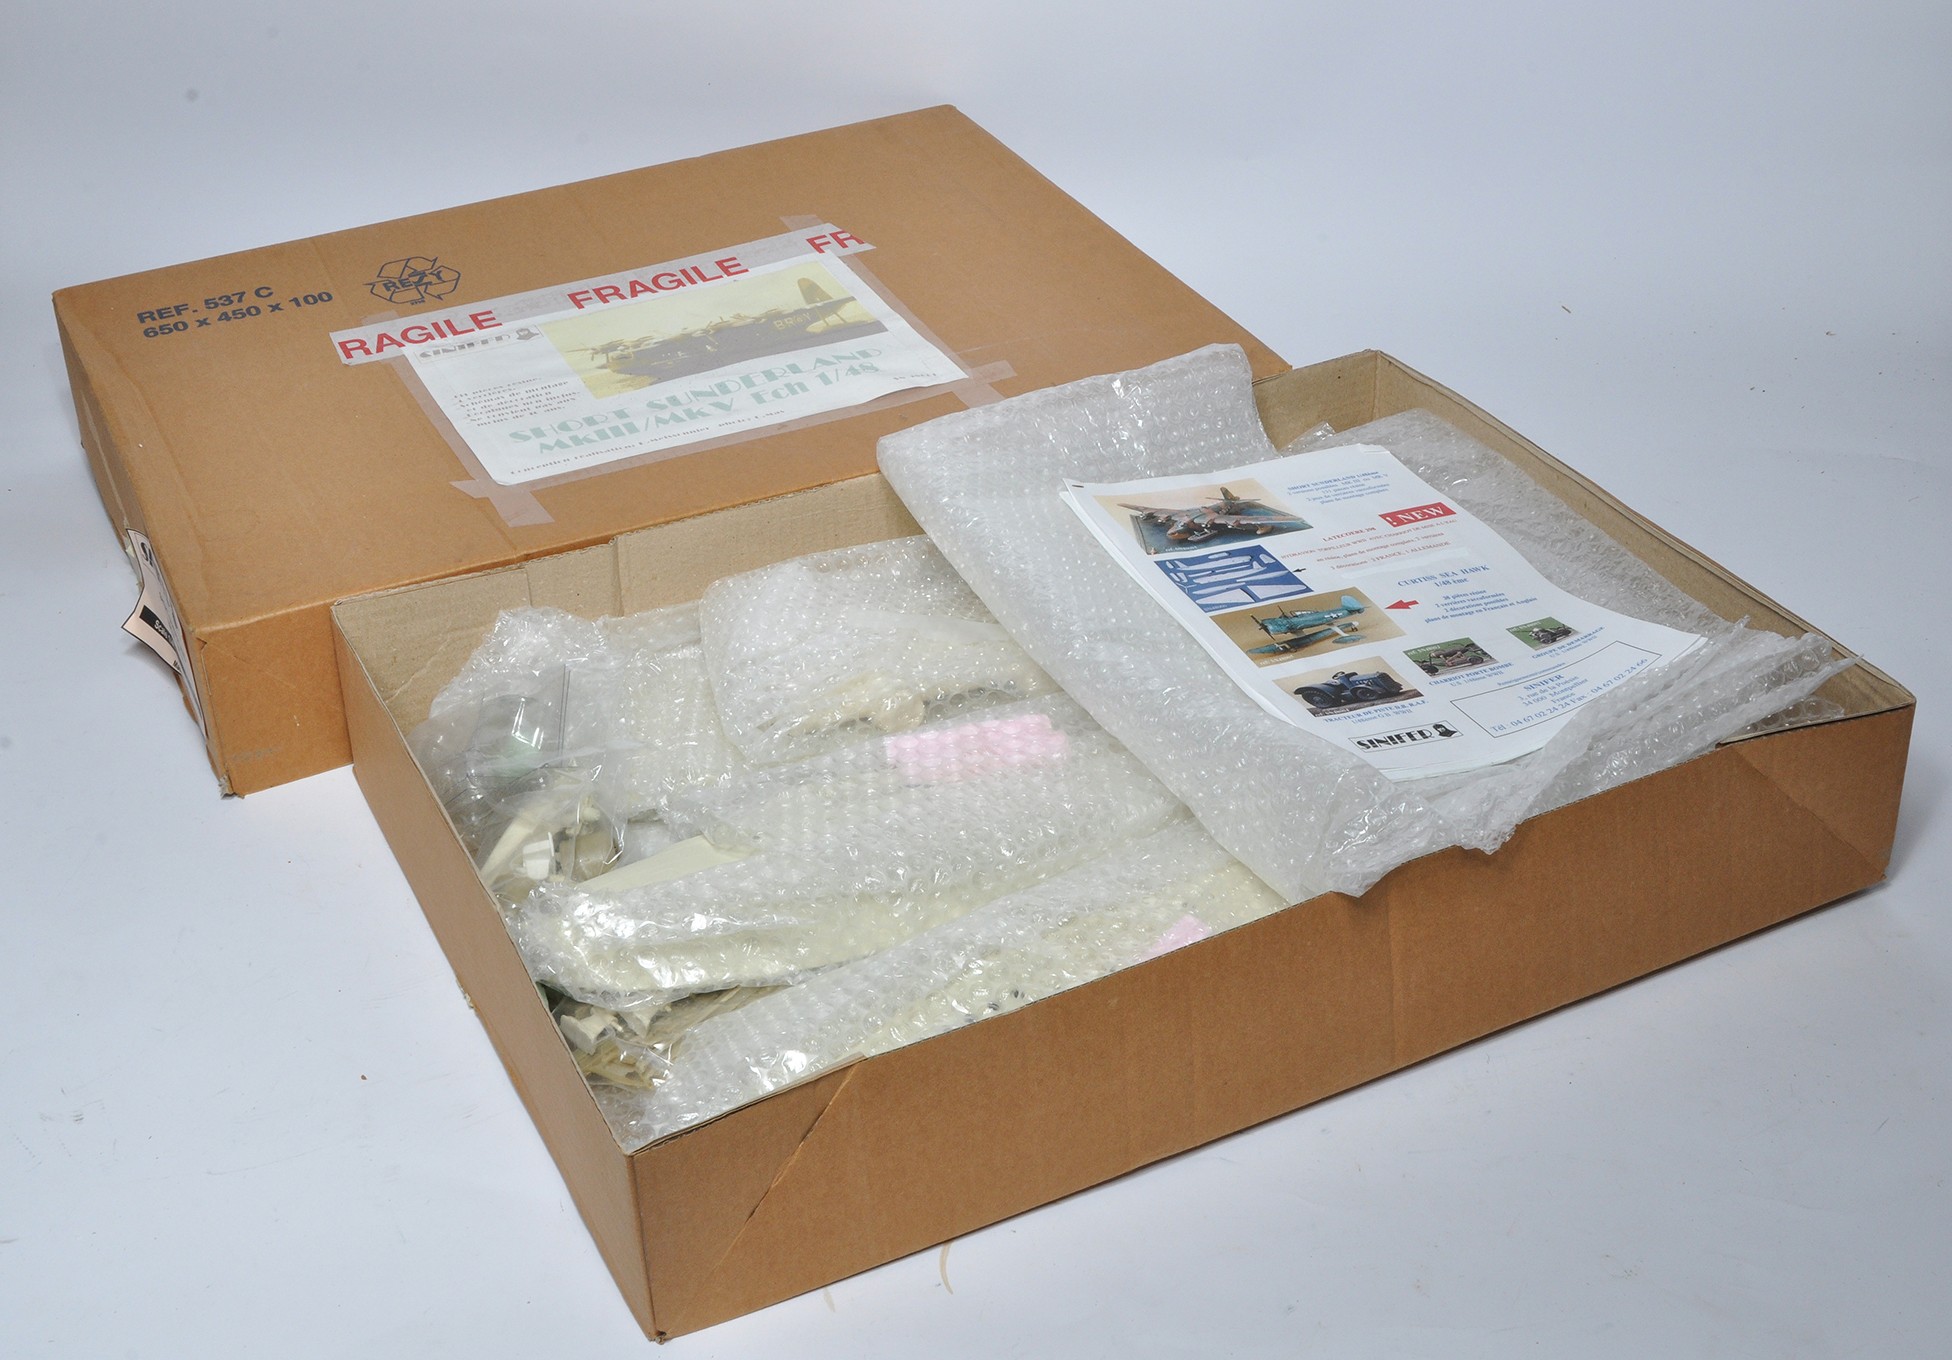 Plastic Model Kit issue 1/48 Short Sunderland MkIII / Mk V. Sinifer SN 48001, appears complete in